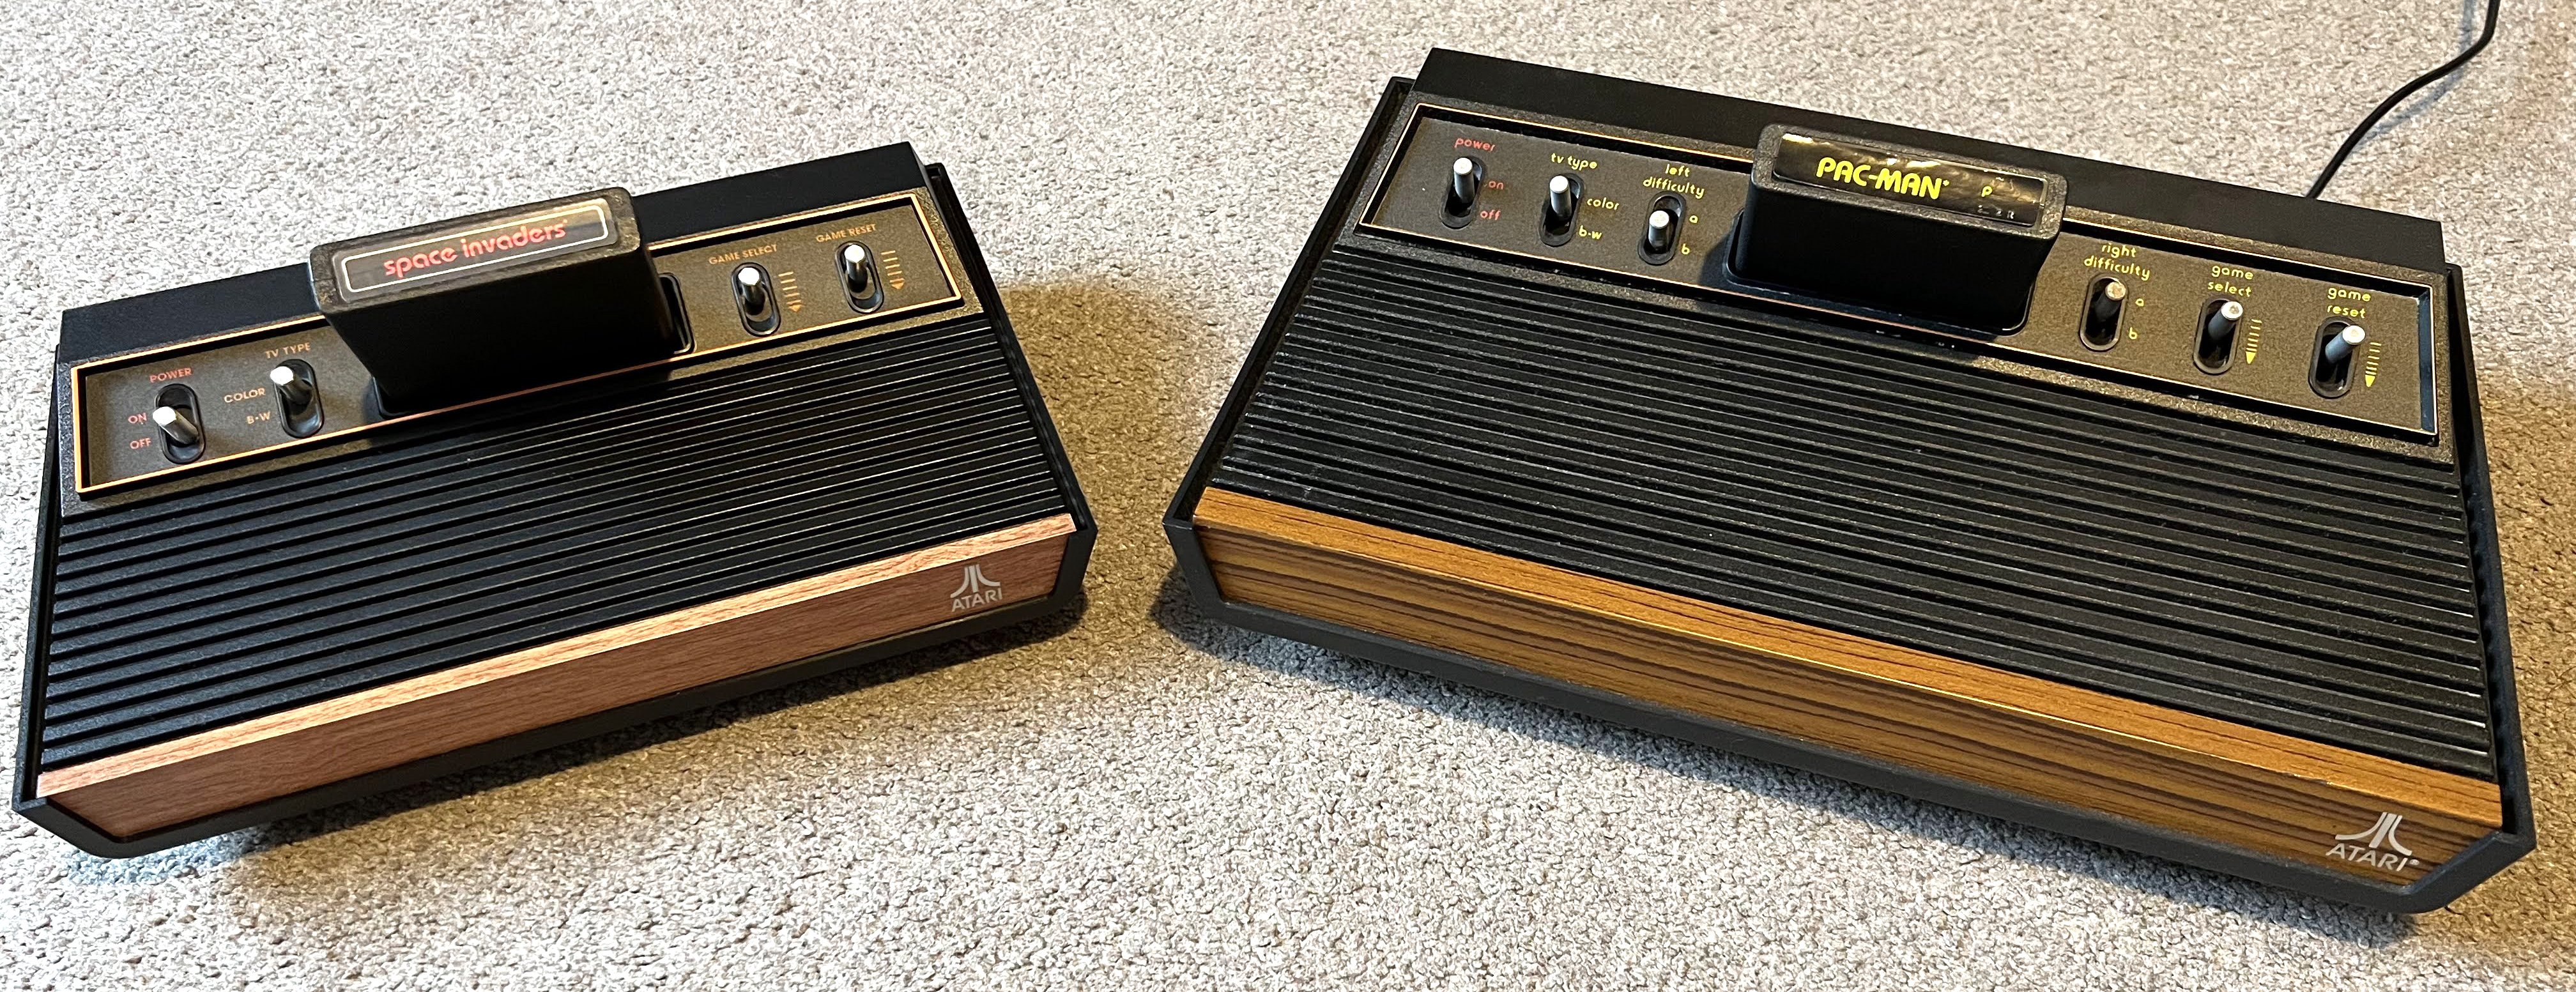 🕹️ Should I Get the New Atari 2600 Plus? 🕹️ 